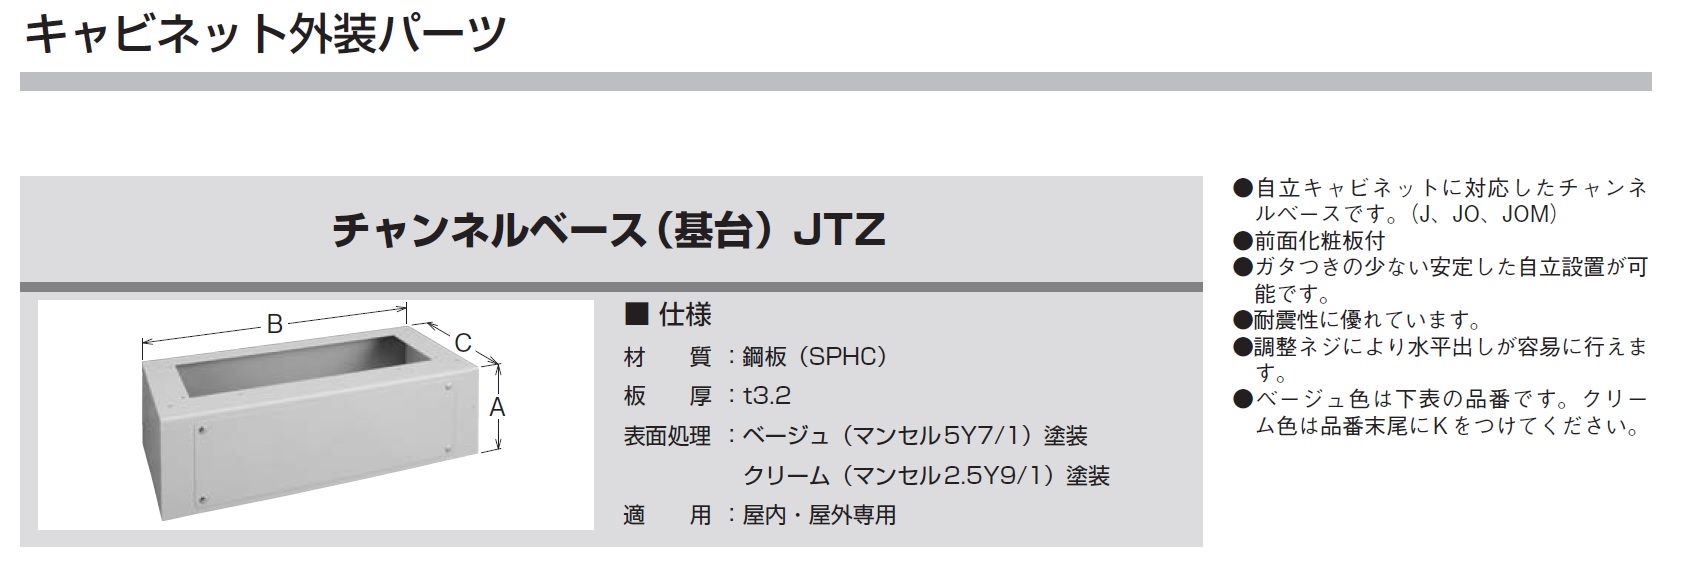 河村電器産業 JTZ2010-35 種別 キャビネットパーツチャンネルベース